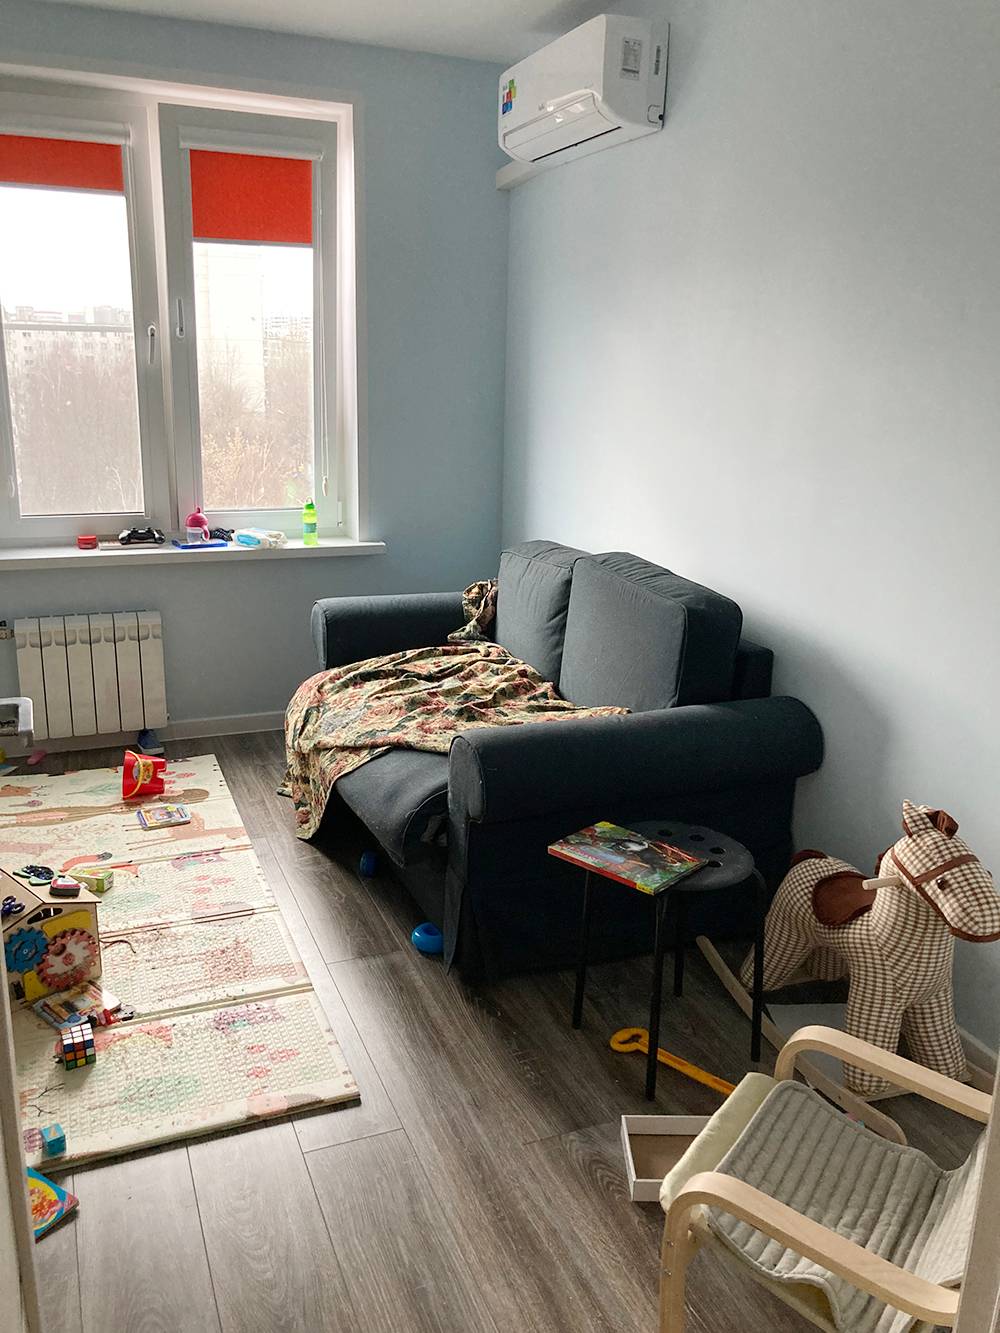 Детская и тот самый ужасный диван из «Икеи», который требует замены